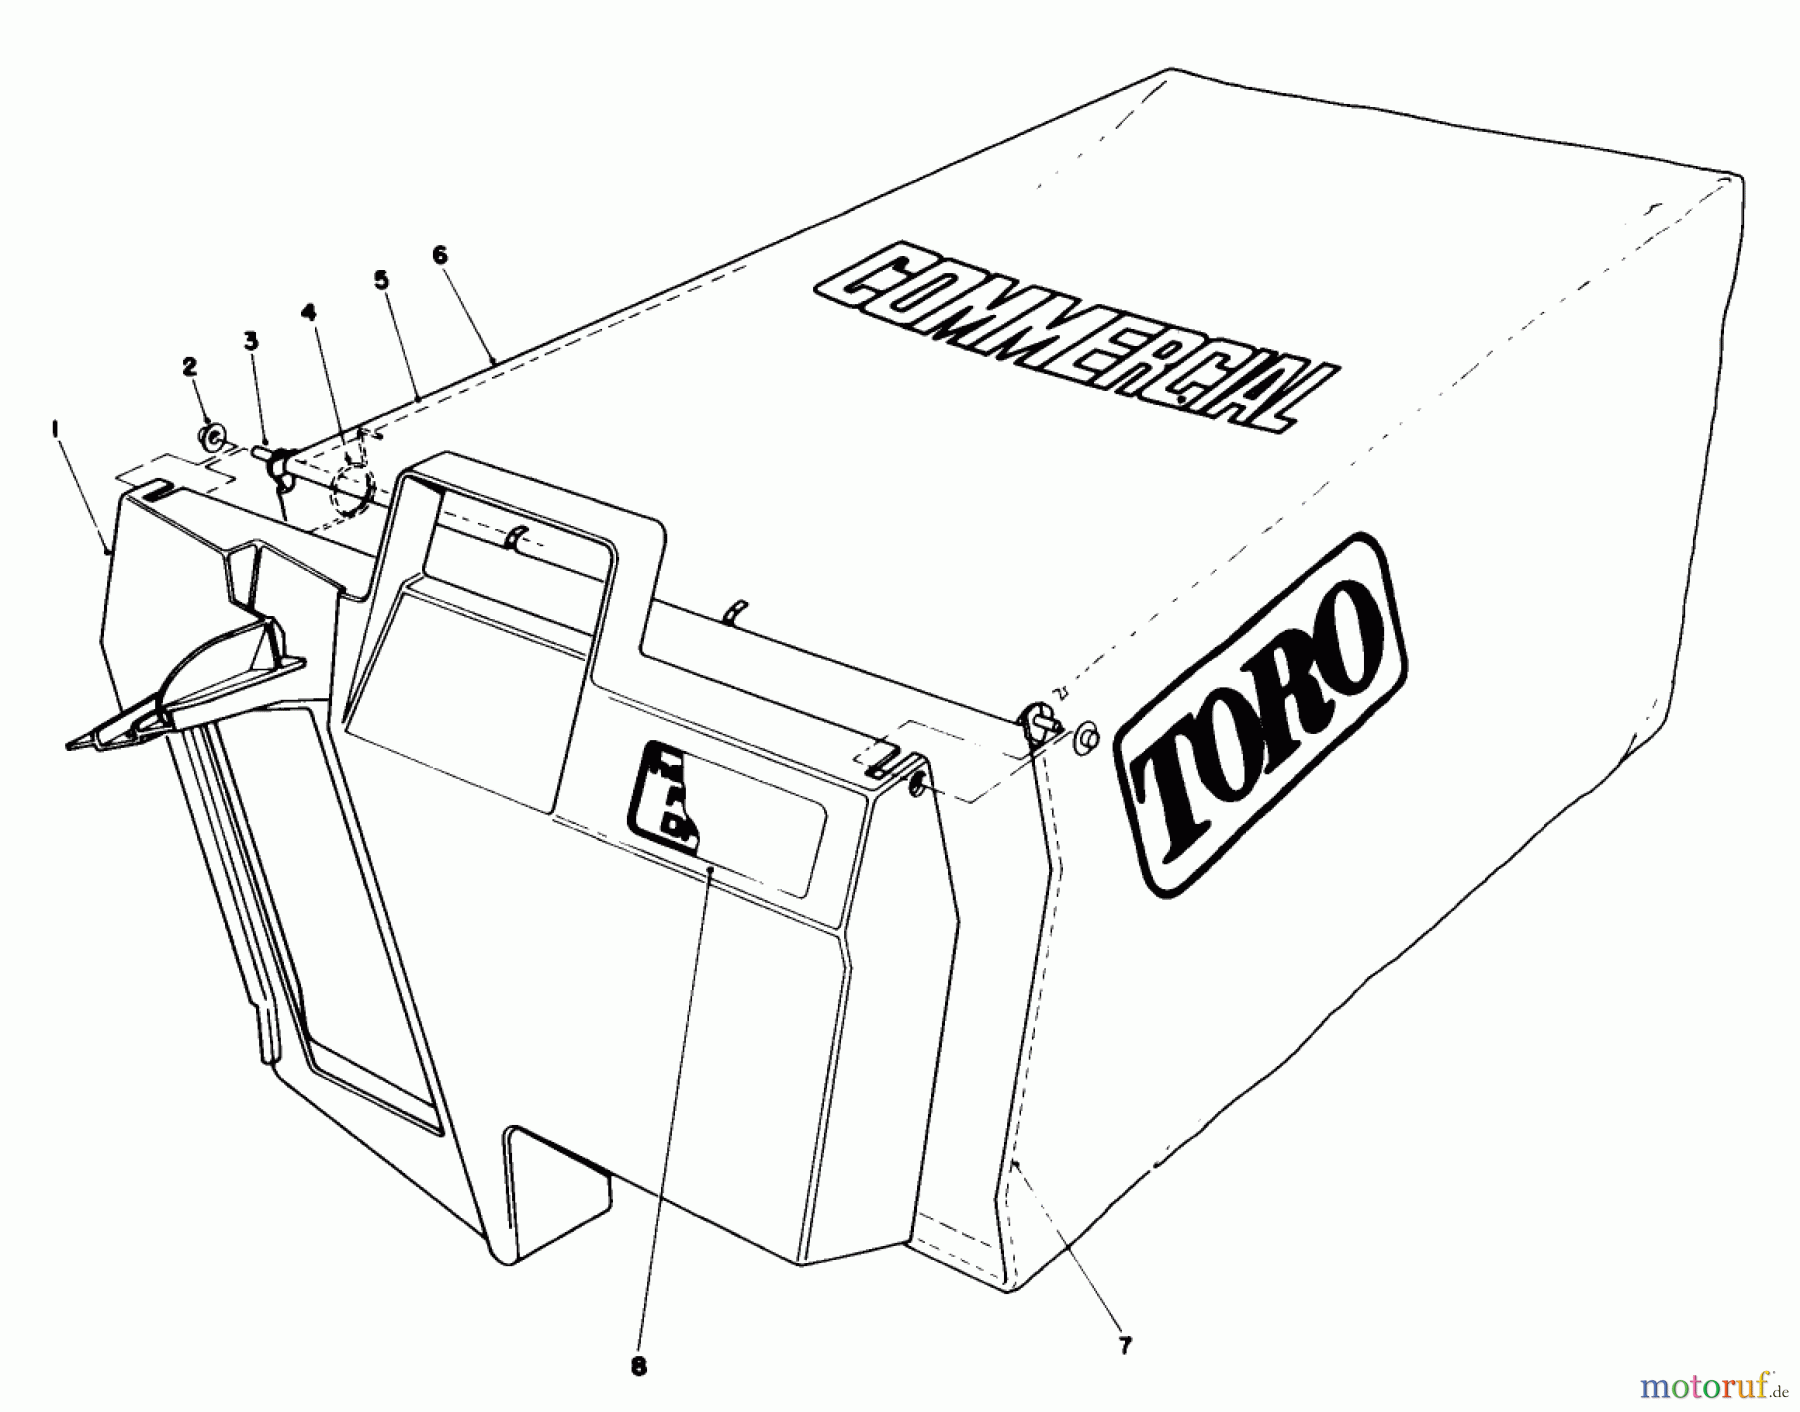  Toro Neu Mowers, Walk-Behind Seite 2 22035 - Toro Lawnmower, 1988 (8000001-8002989) GRASS BAG ASSEMBLY NO. 11-5609